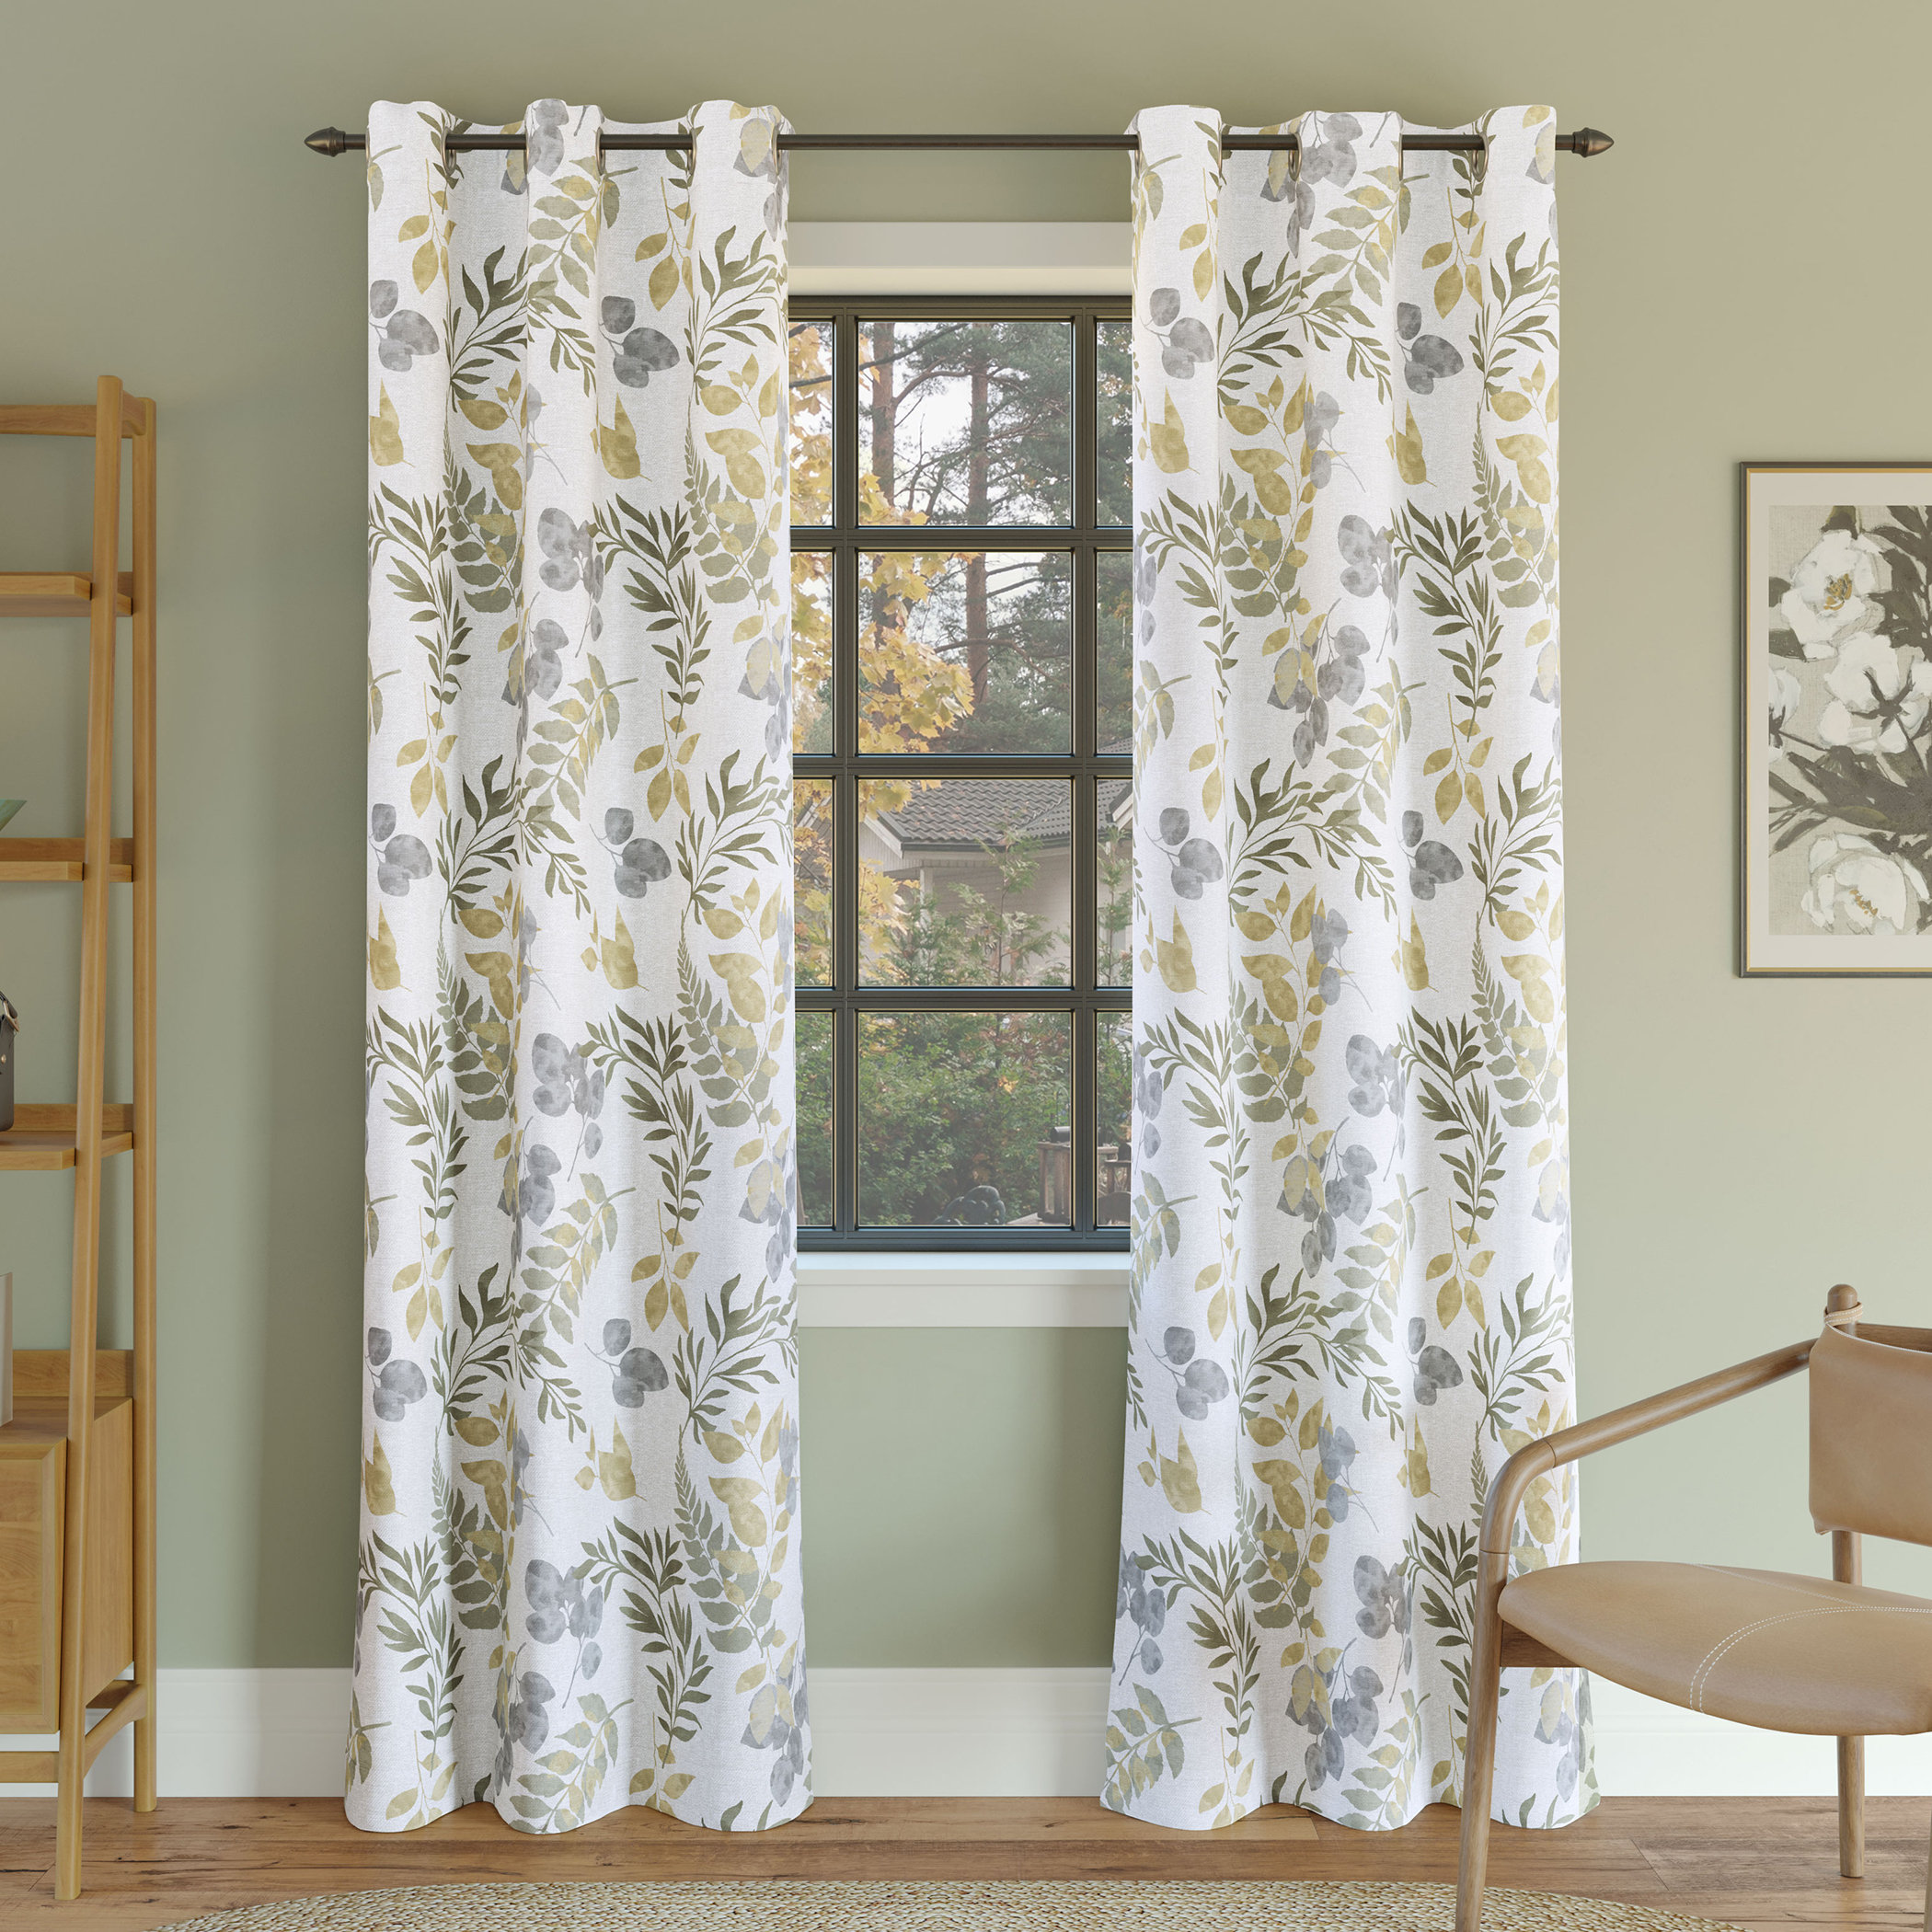 Vogan Floral Leaf Print Blackout Grommet Curtain Panel Mercury Row Size per Panel: 40 W x 63 L